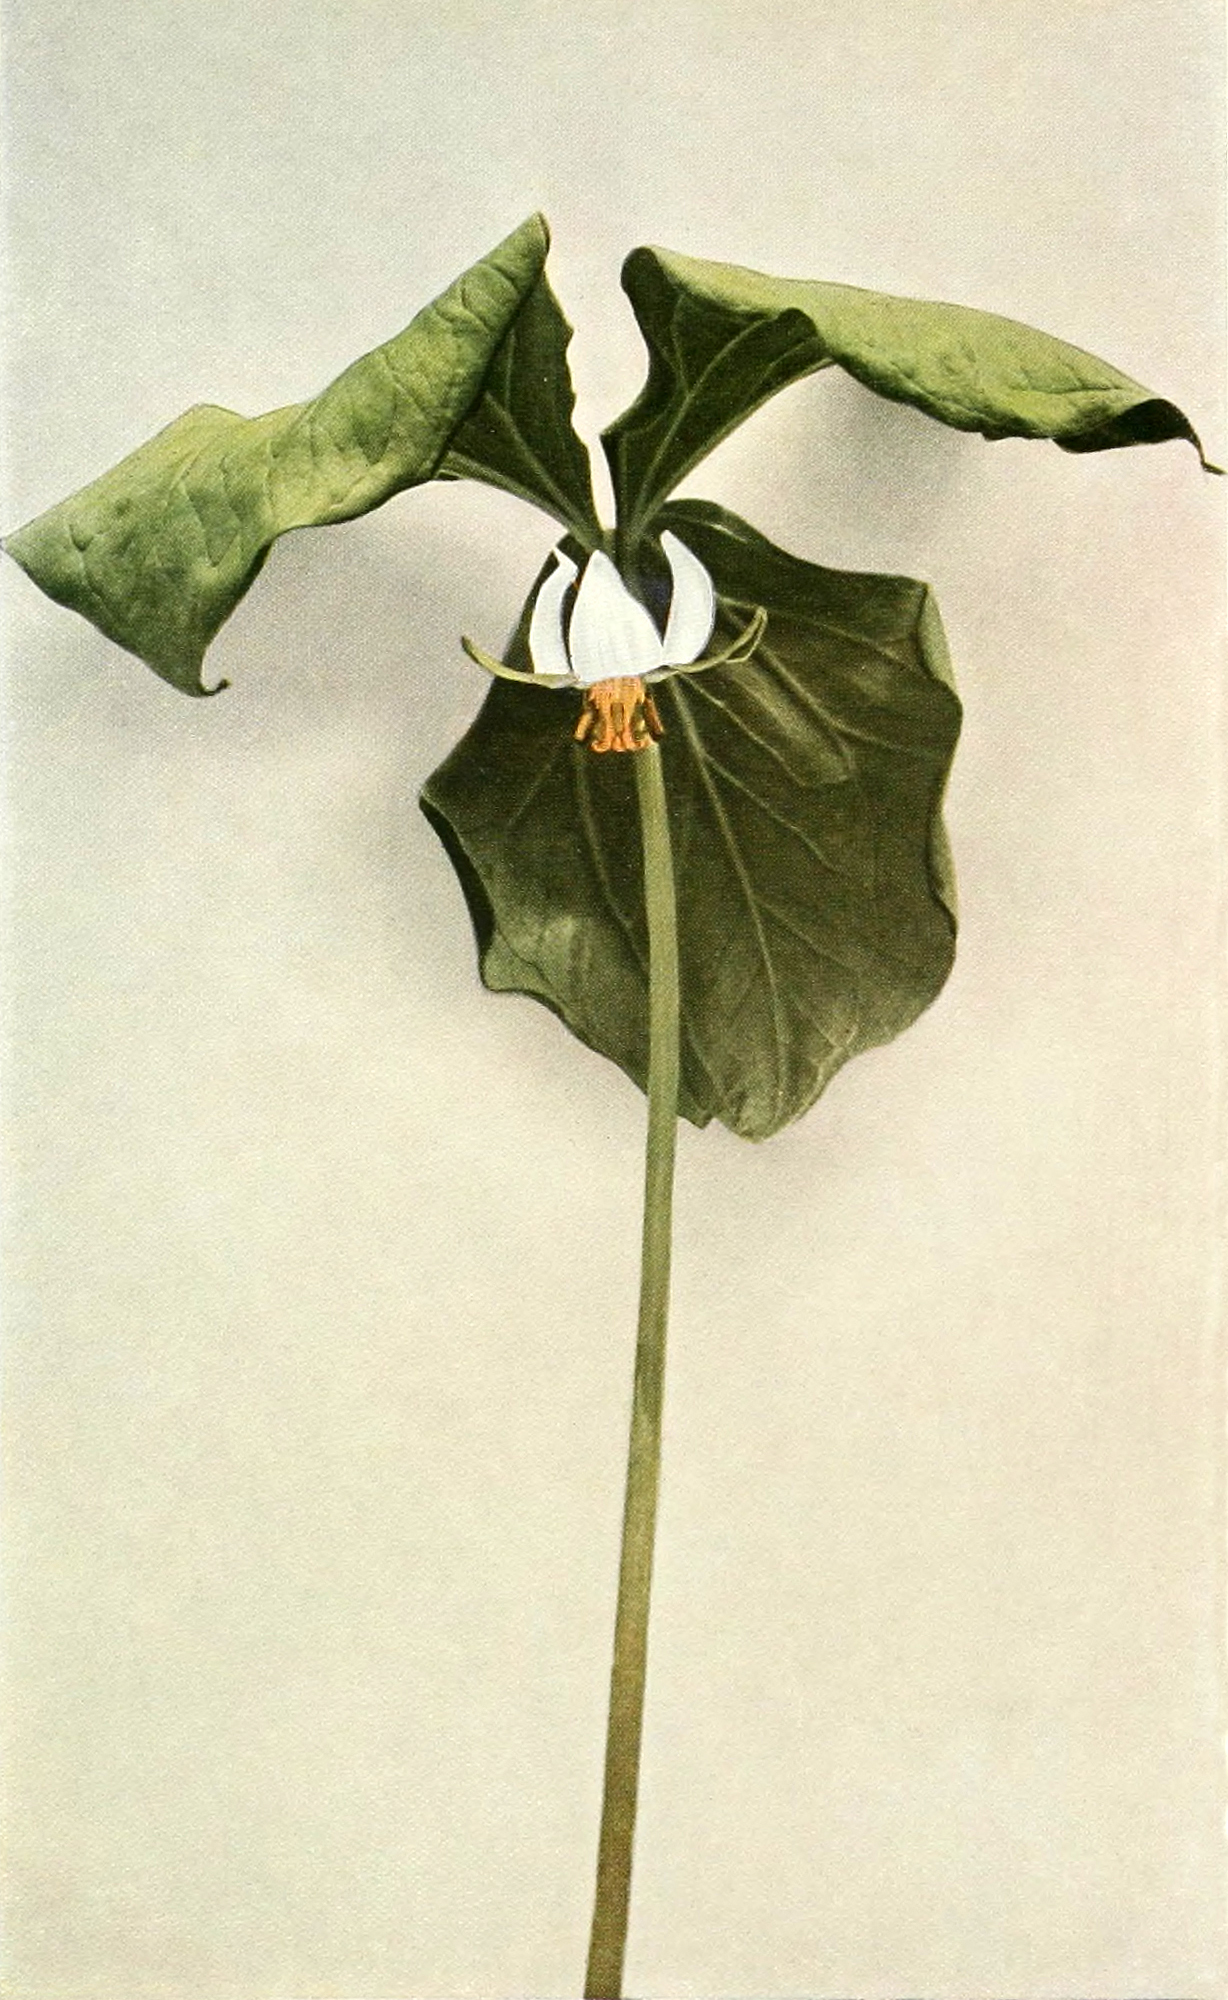 Drooping Trillium cernuum botanical illustration.